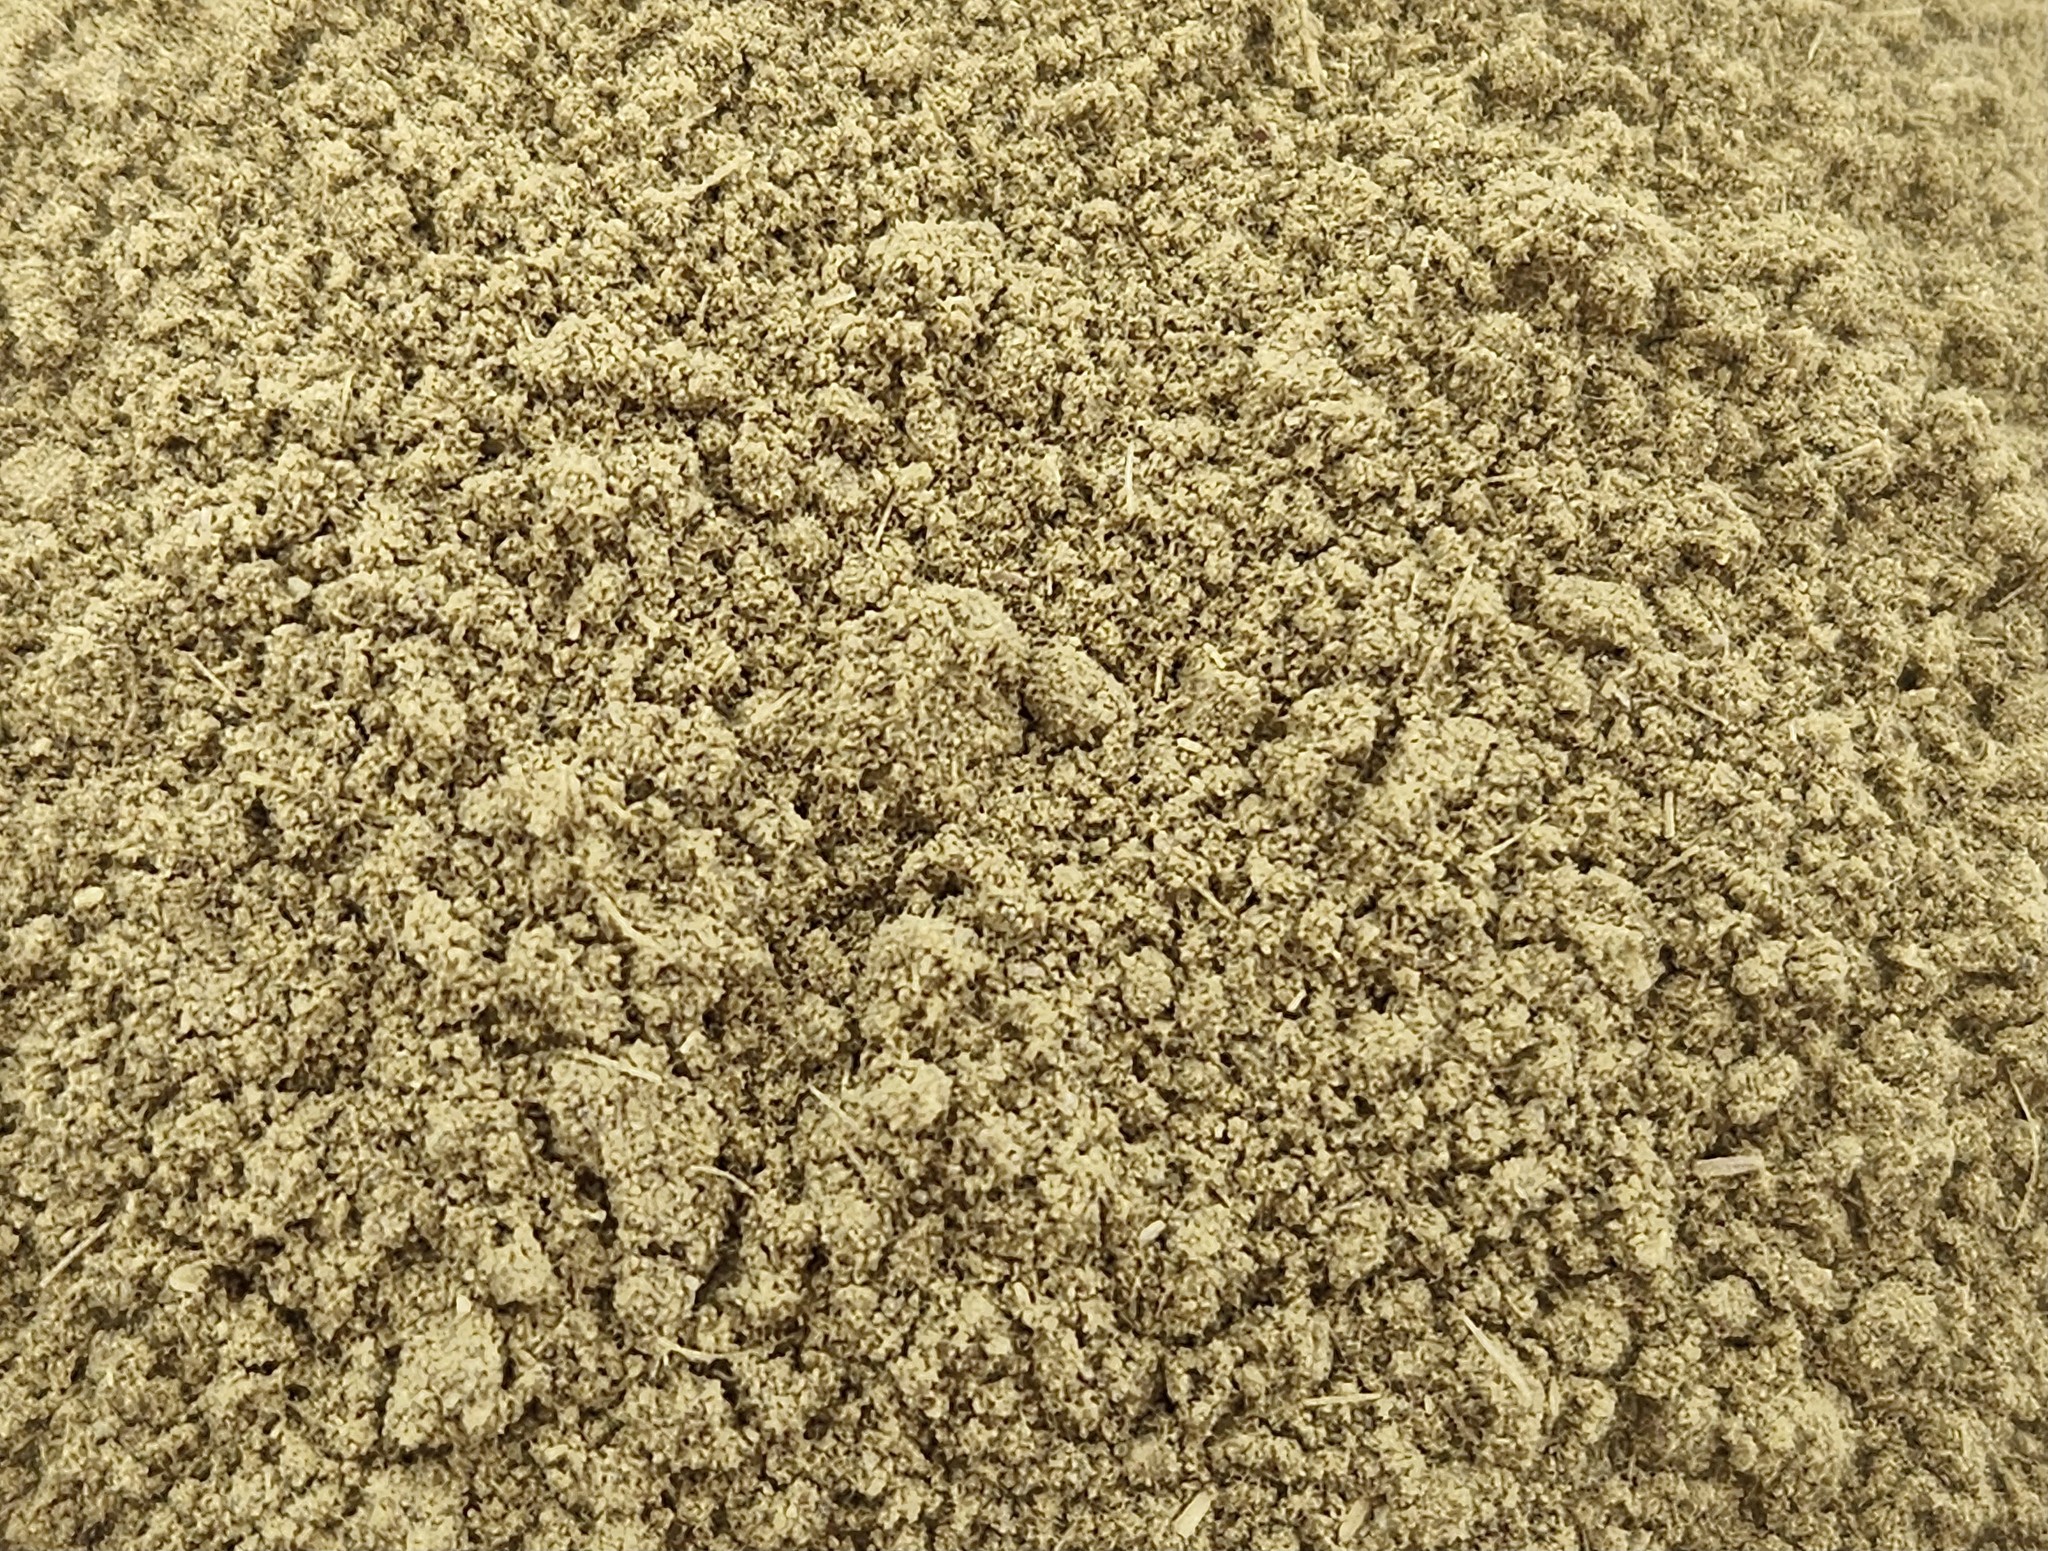 Chaparral Leaf Powder Bulk